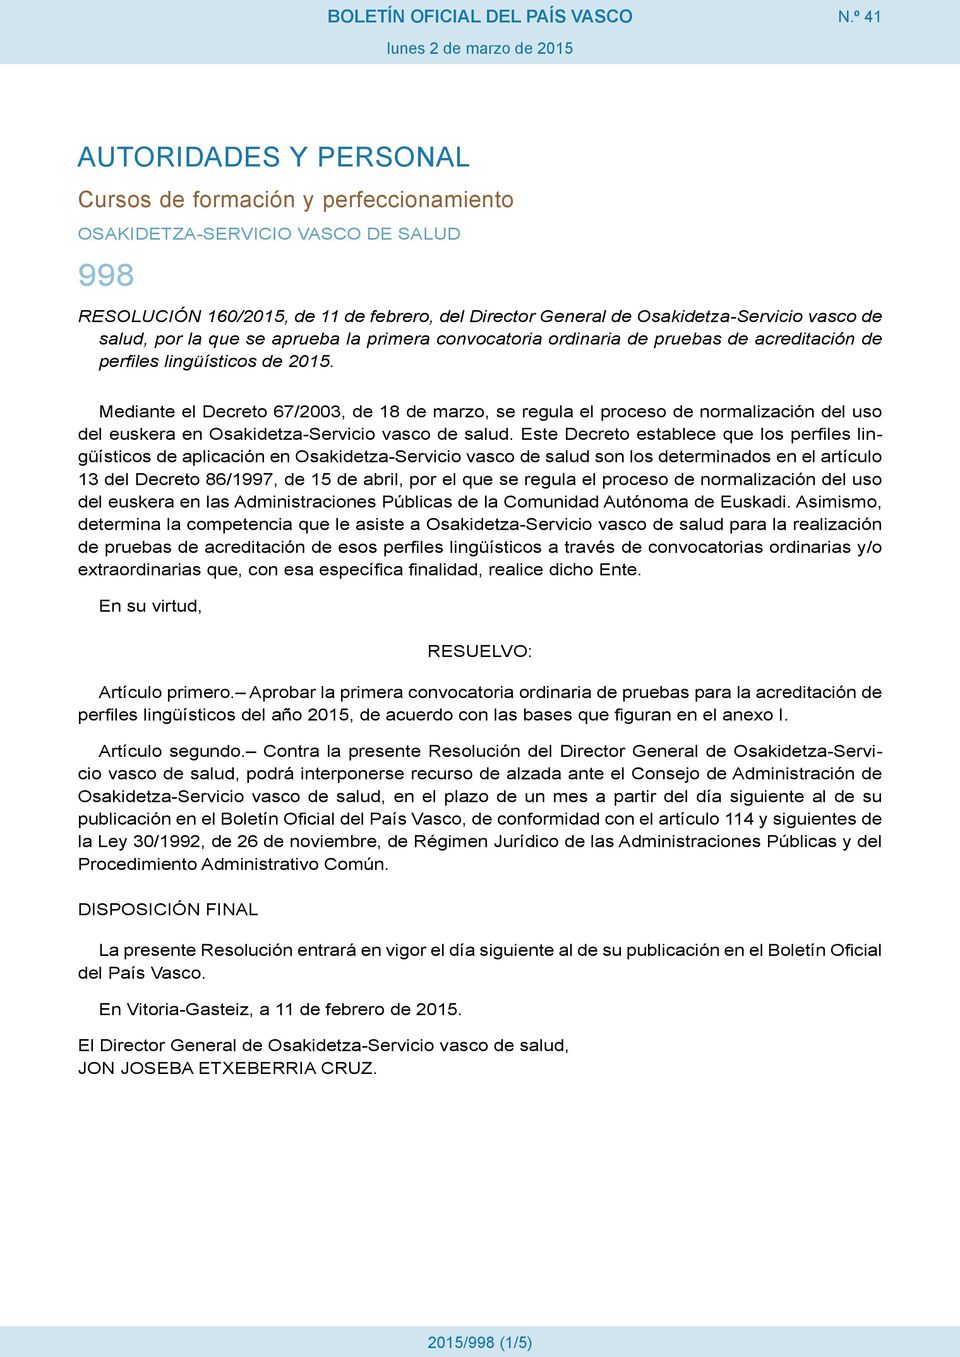 Mediante el Decreto 67/2003, de 18 de marzo, se regula el proceso de normalización del uso del euskera en Osakidetza-Servicio vasco de salud.